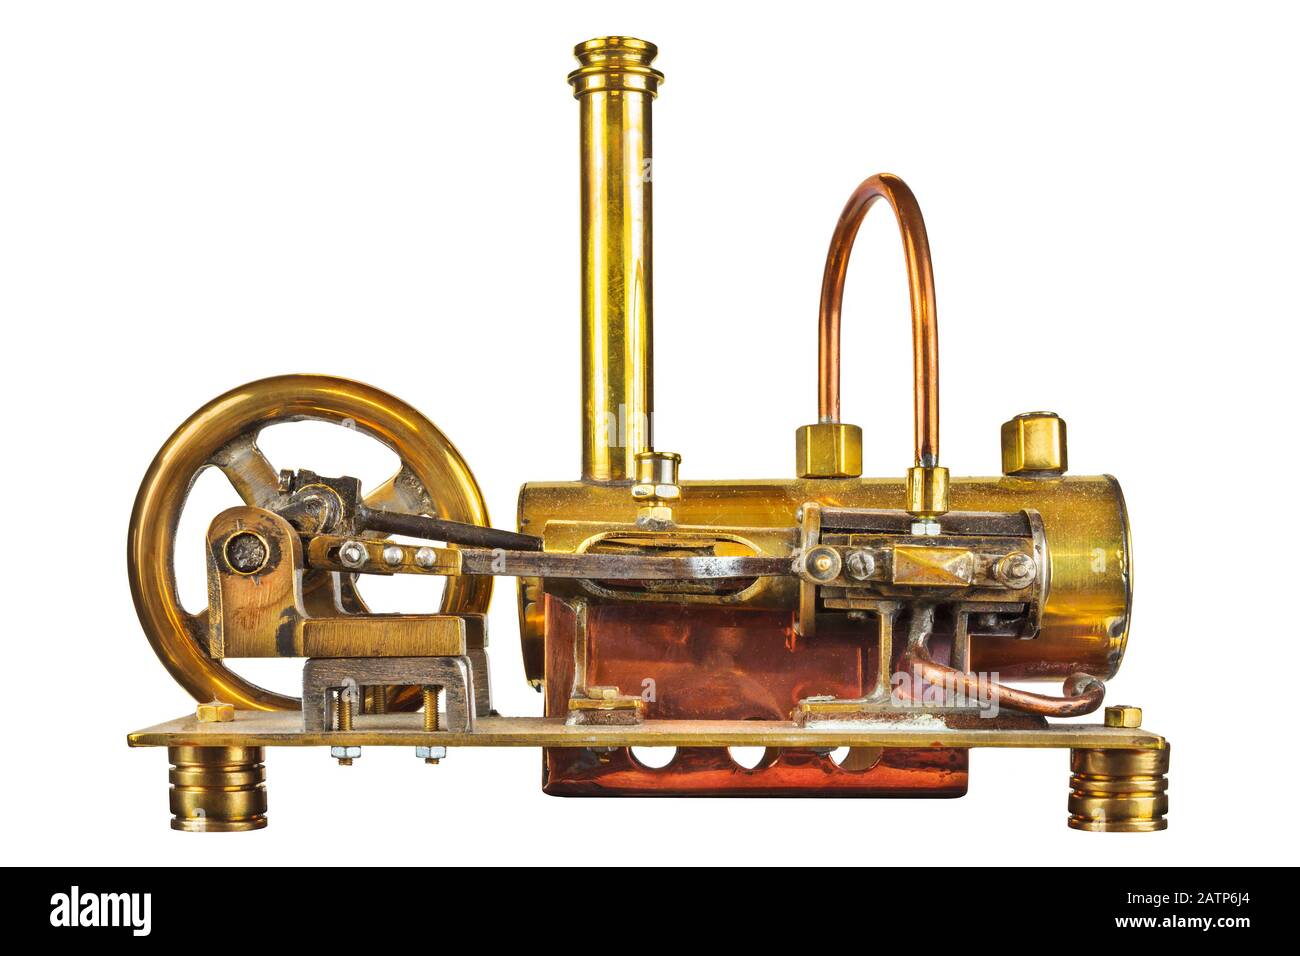 Maquina de vapor revolucion fotografías e imágenes de alta resolución - Página 2 - Alamy